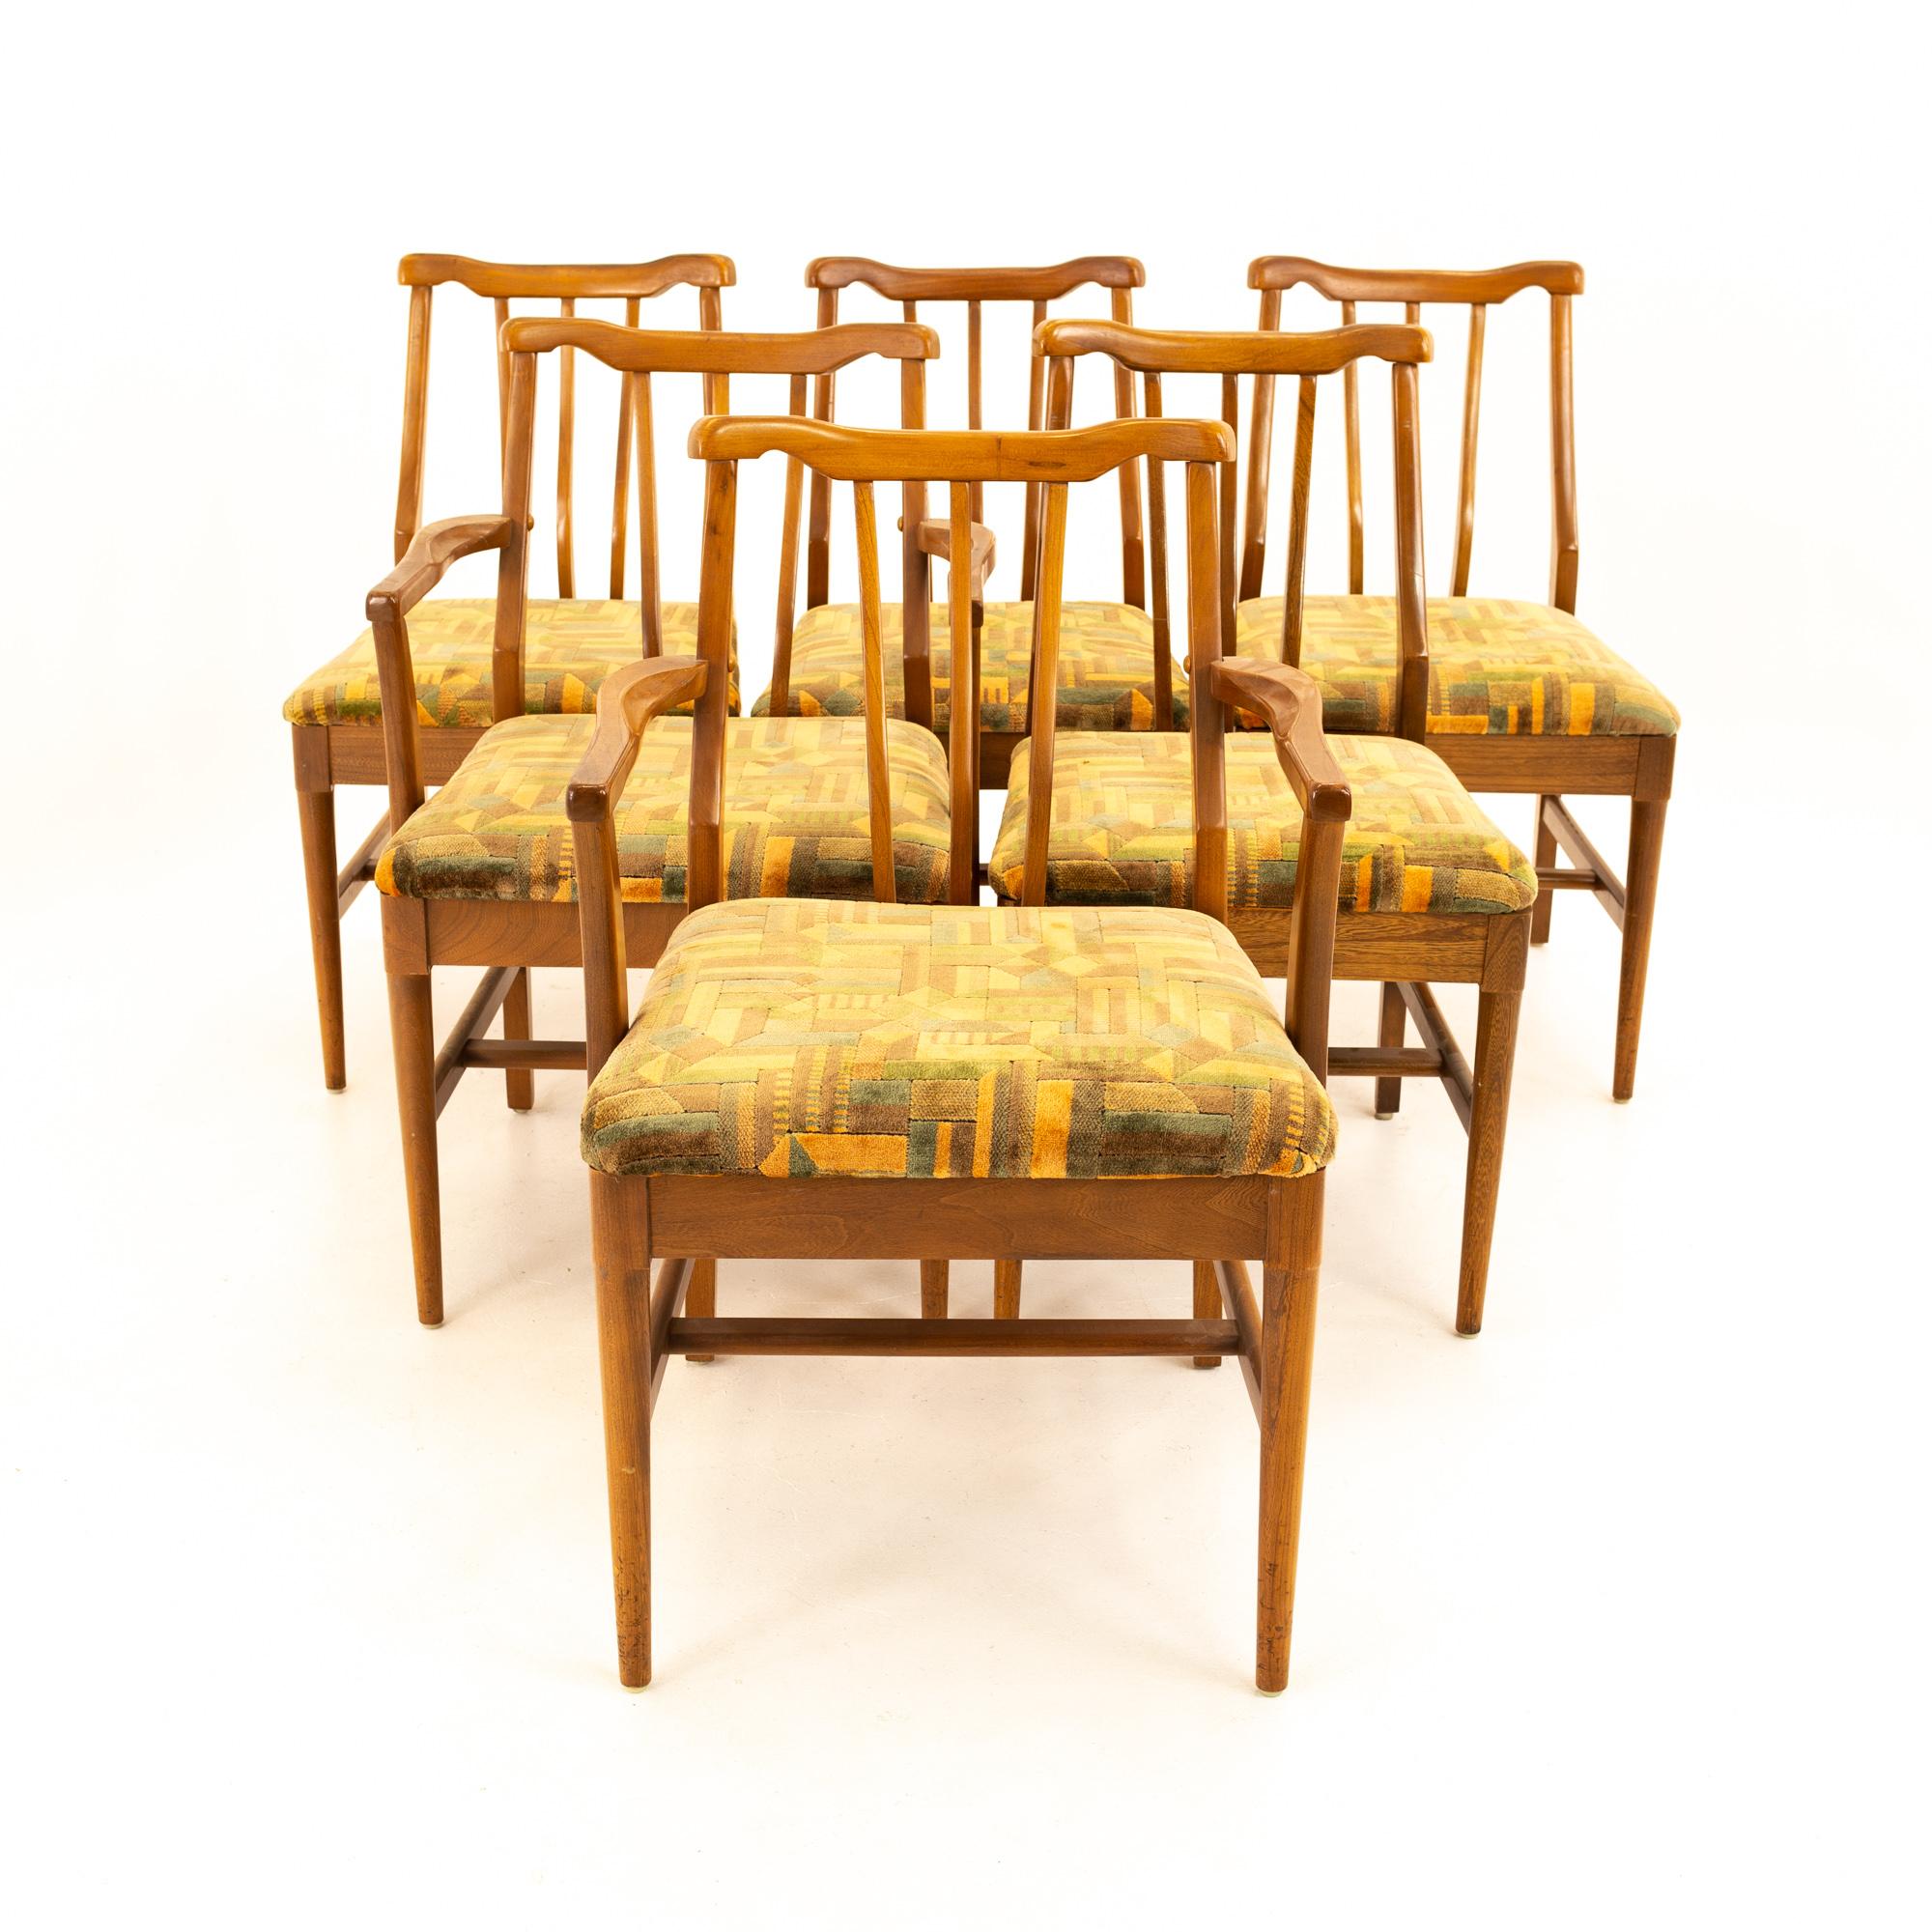 Chaises de salle à manger Mid Century en noyer de style Jack Lenor Larsen - Lot de 6
Chaque chaise mesure : 19 large x 19 profond x 32, avec une hauteur d'assise de 18 pouces


Tous les meubles peuvent être obtenus dans ce que nous appelons un état